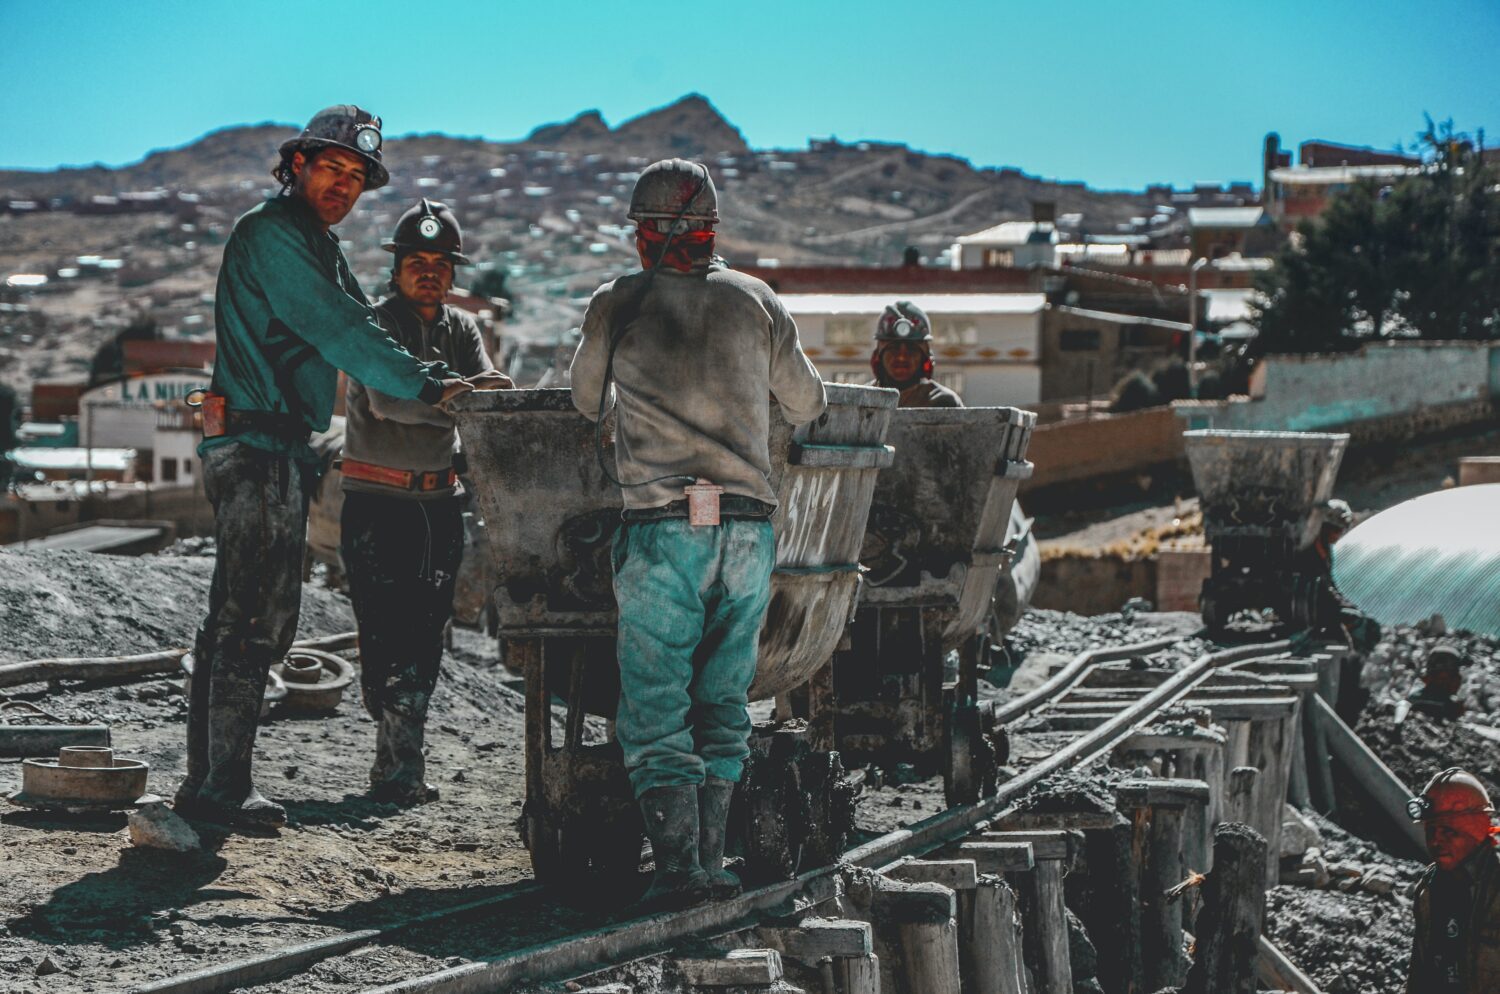 Bergarbeiter in der Stadt Potosí, neben einem Rollwagen